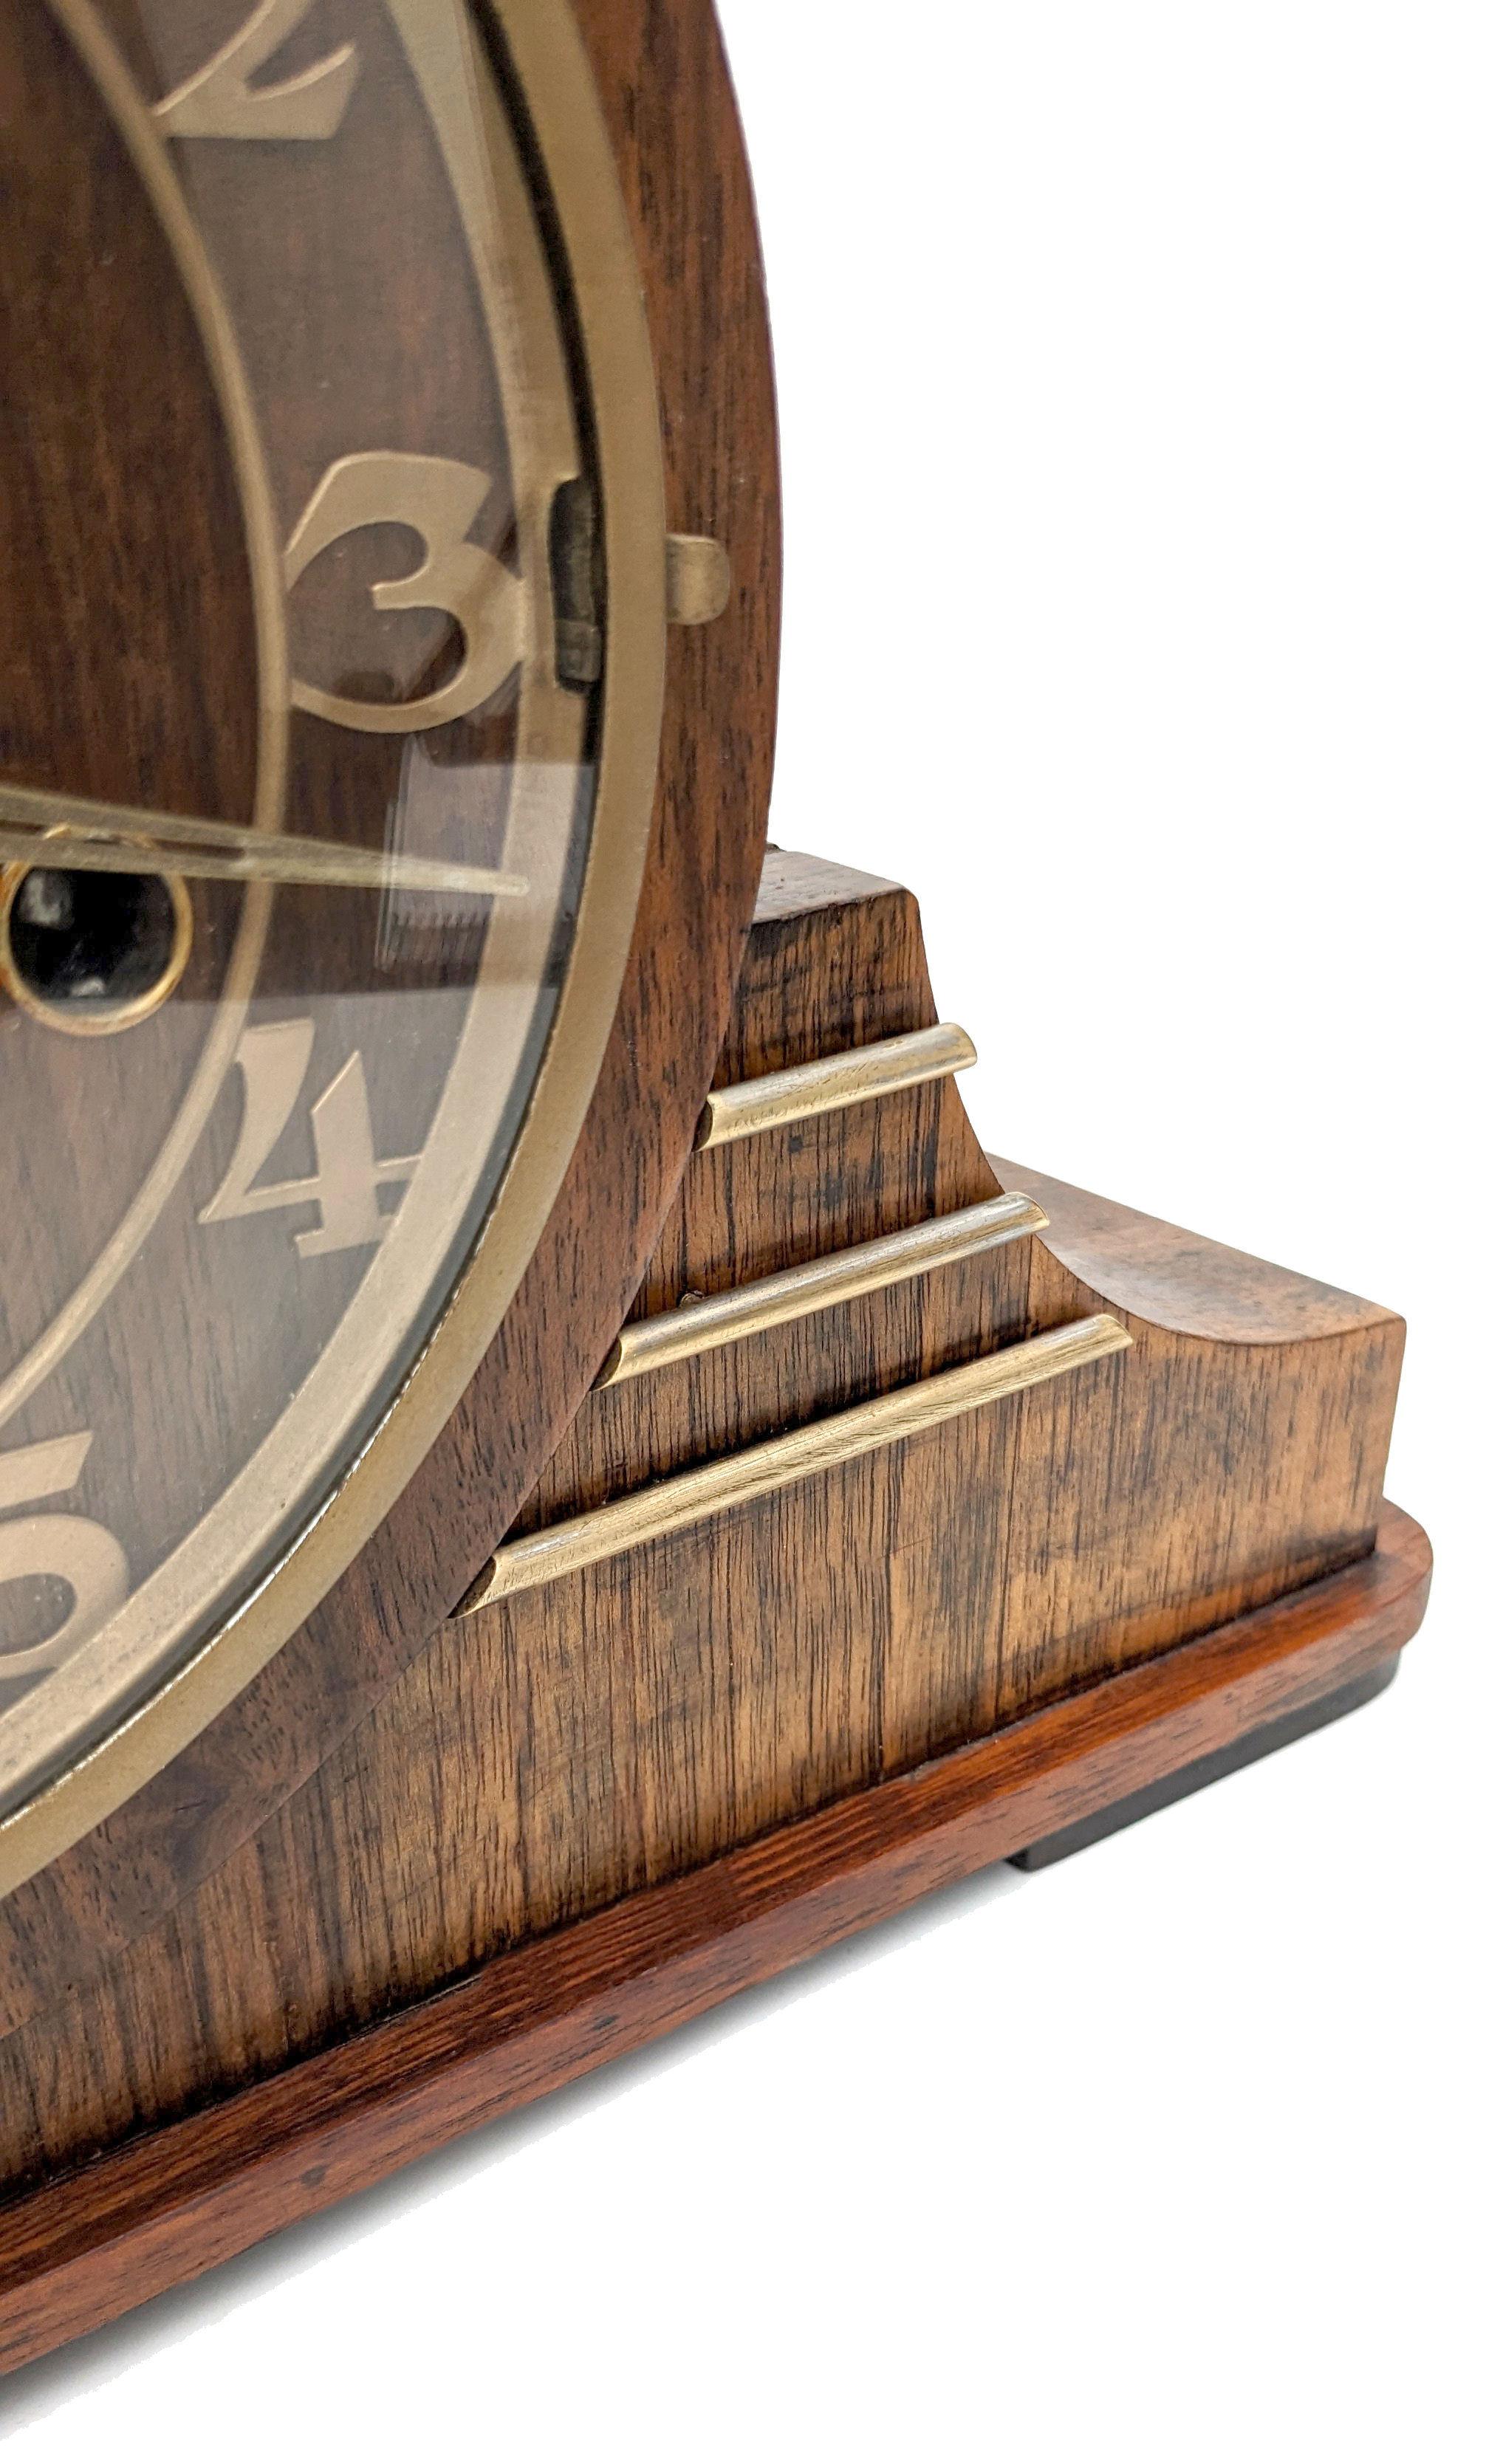 Für Ihre Betrachtung ist diese sehr stilvolle 1930's Art Deco Mantel Uhr in Deutschland von Uhrmachern Haller gemacht. Voll funktionsfähig - gewartet, geprüft und kalibriert von einem qualifizierten Uhrmacher. Fabelhafte seltene asymmetrische Fall